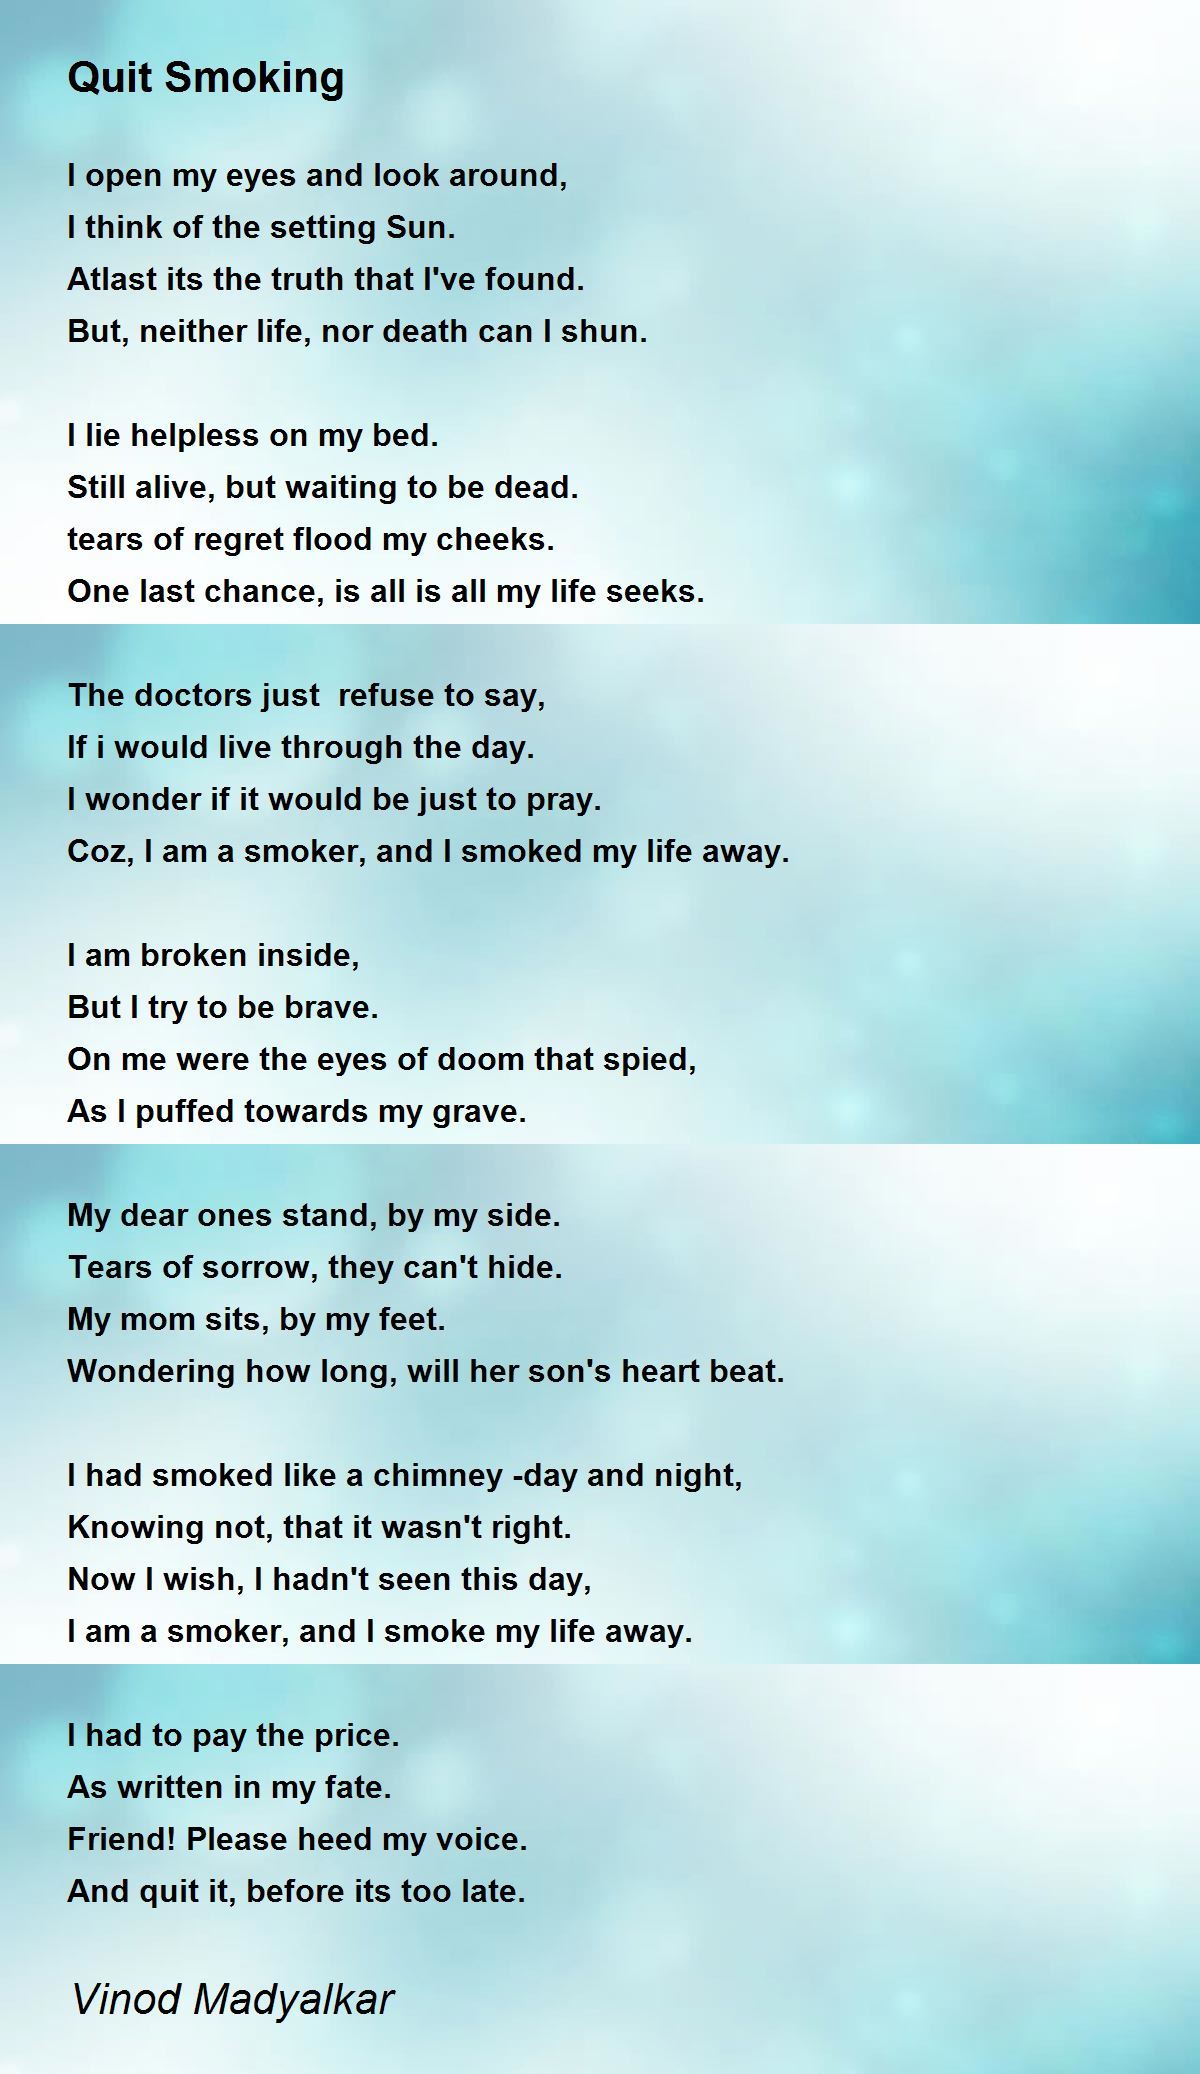 Quit Smoking - Quit Smoking Poem by Vinod Madyalkar